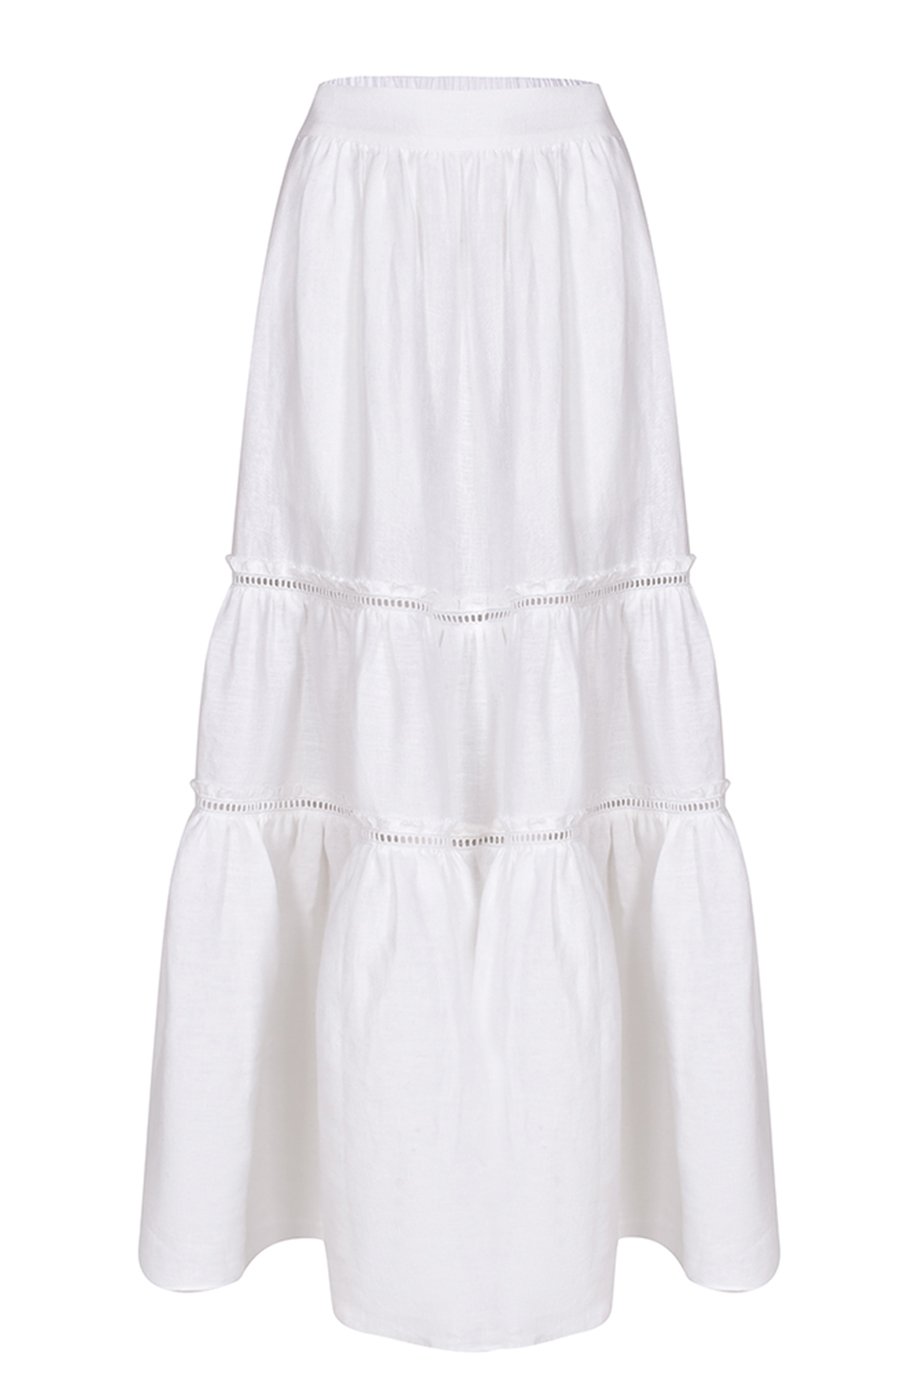 Husk Coral Skirt - White